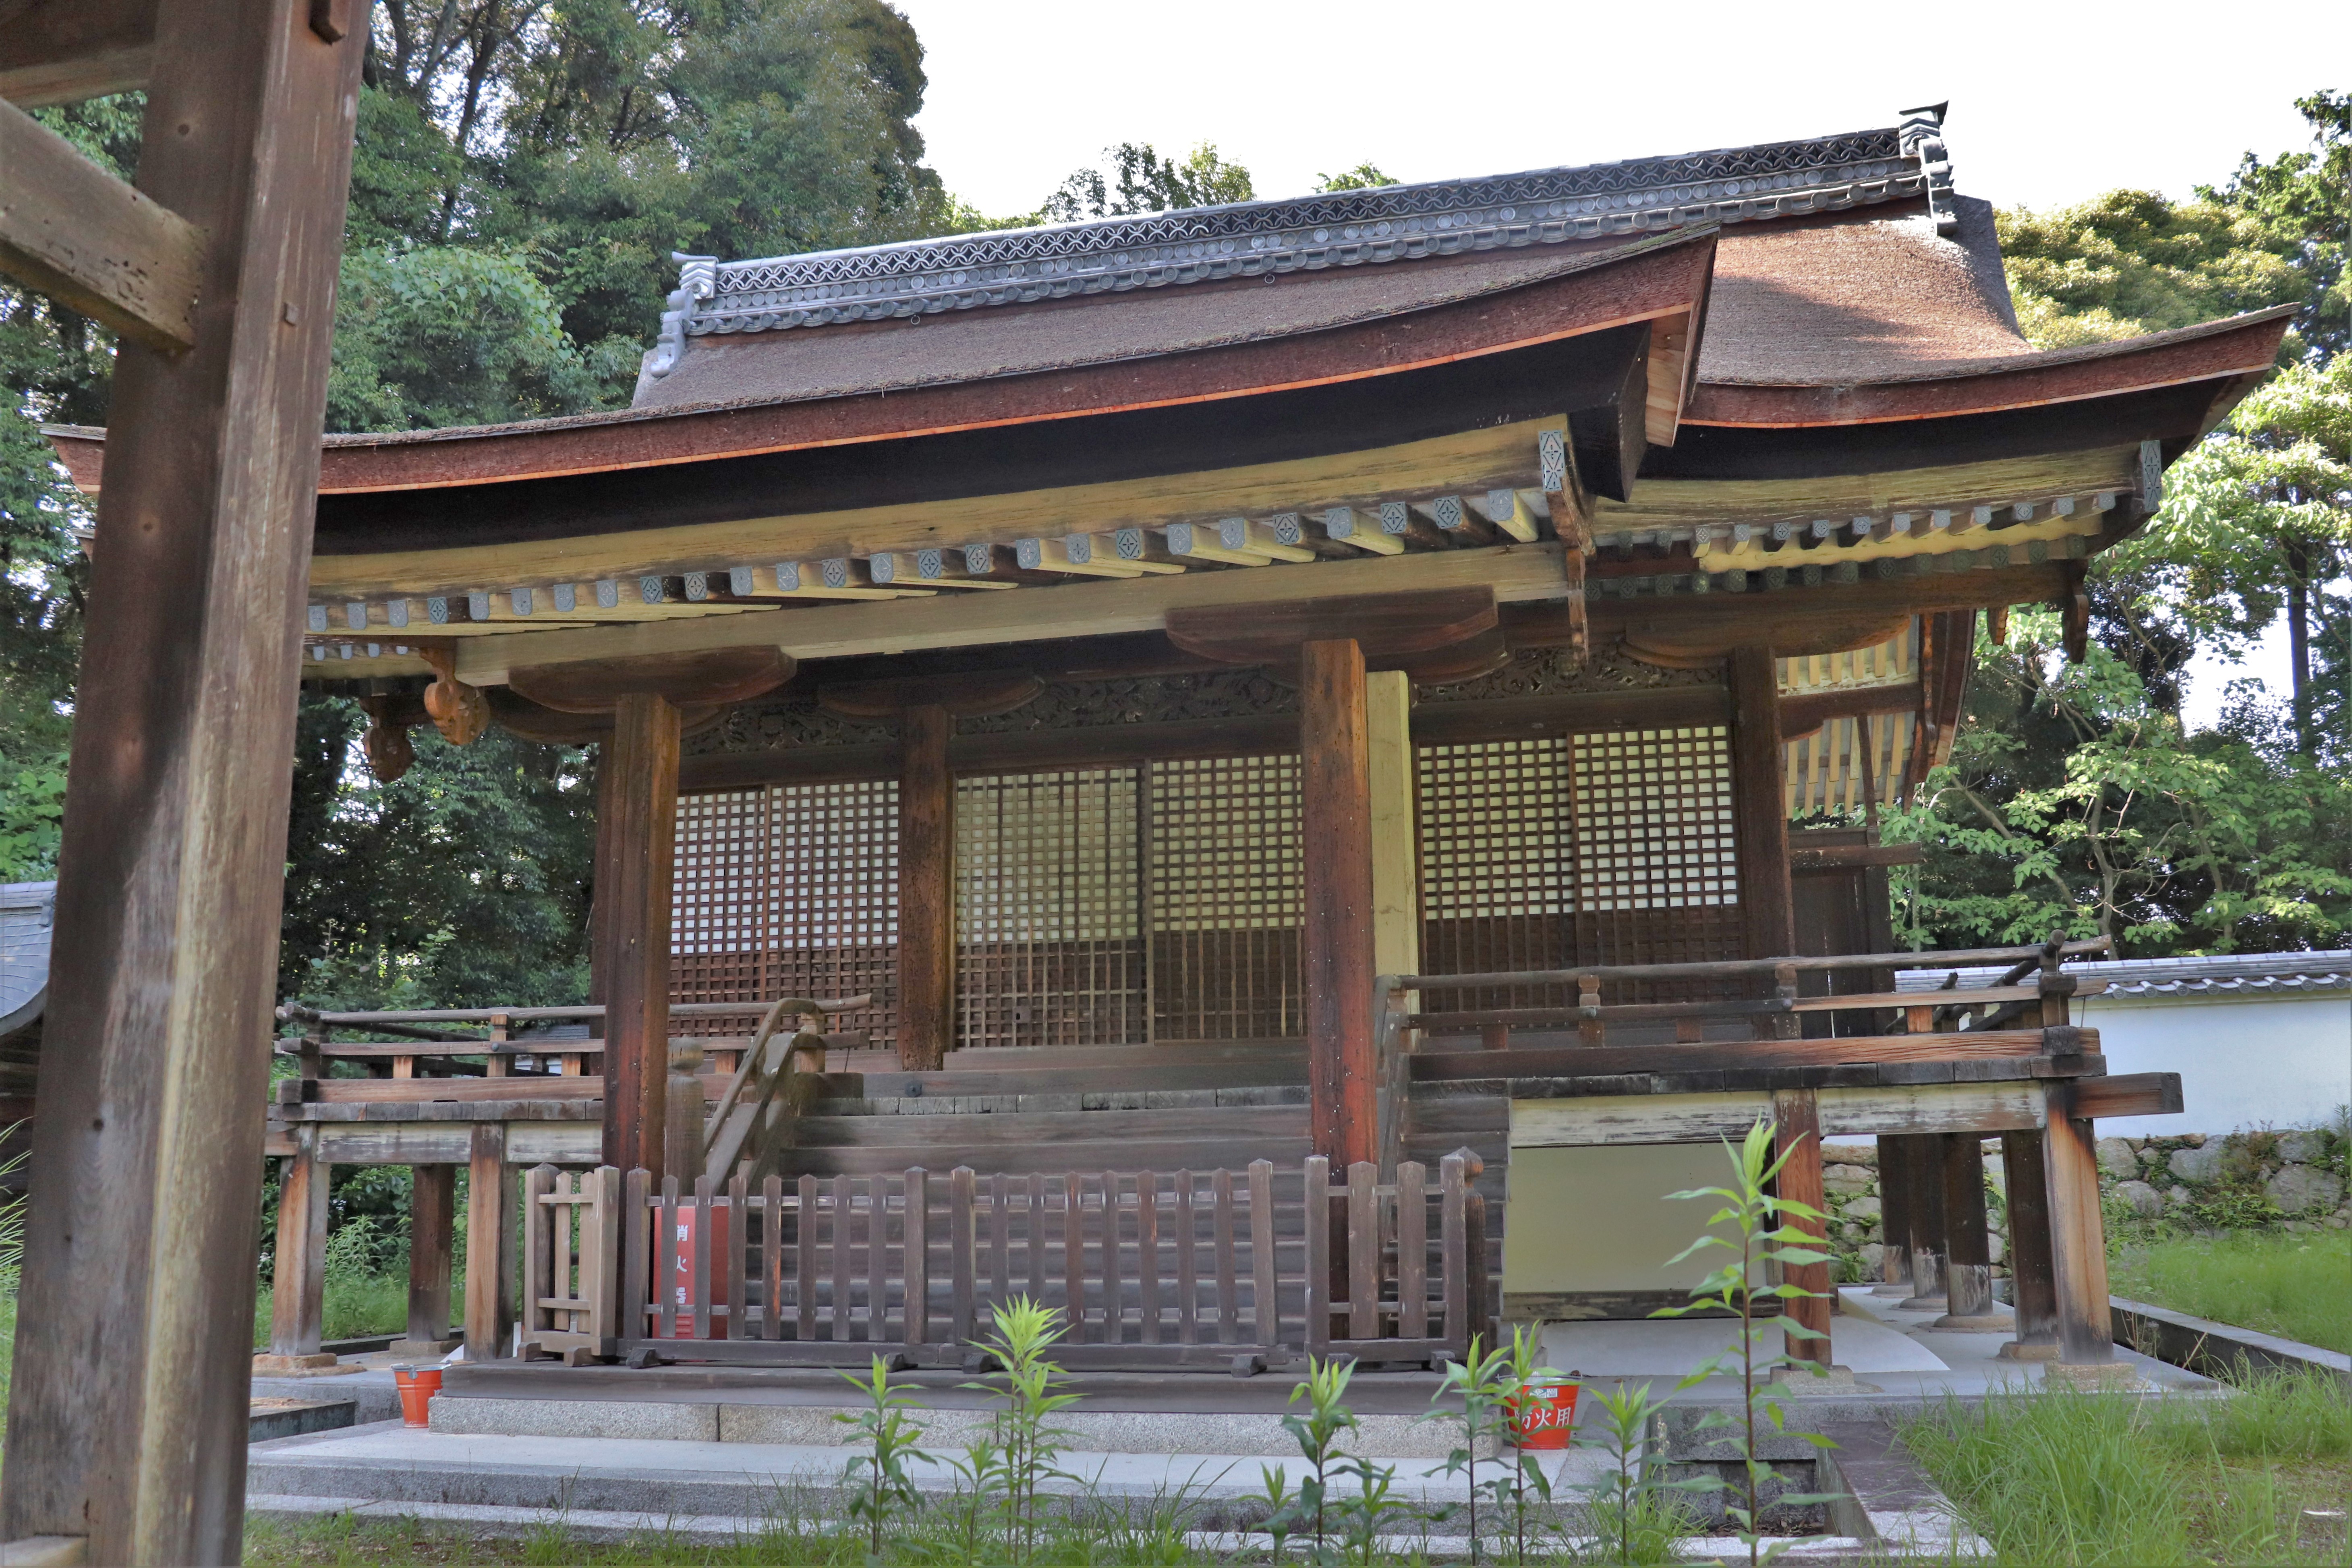 Main building of the Shinra Zenshindo